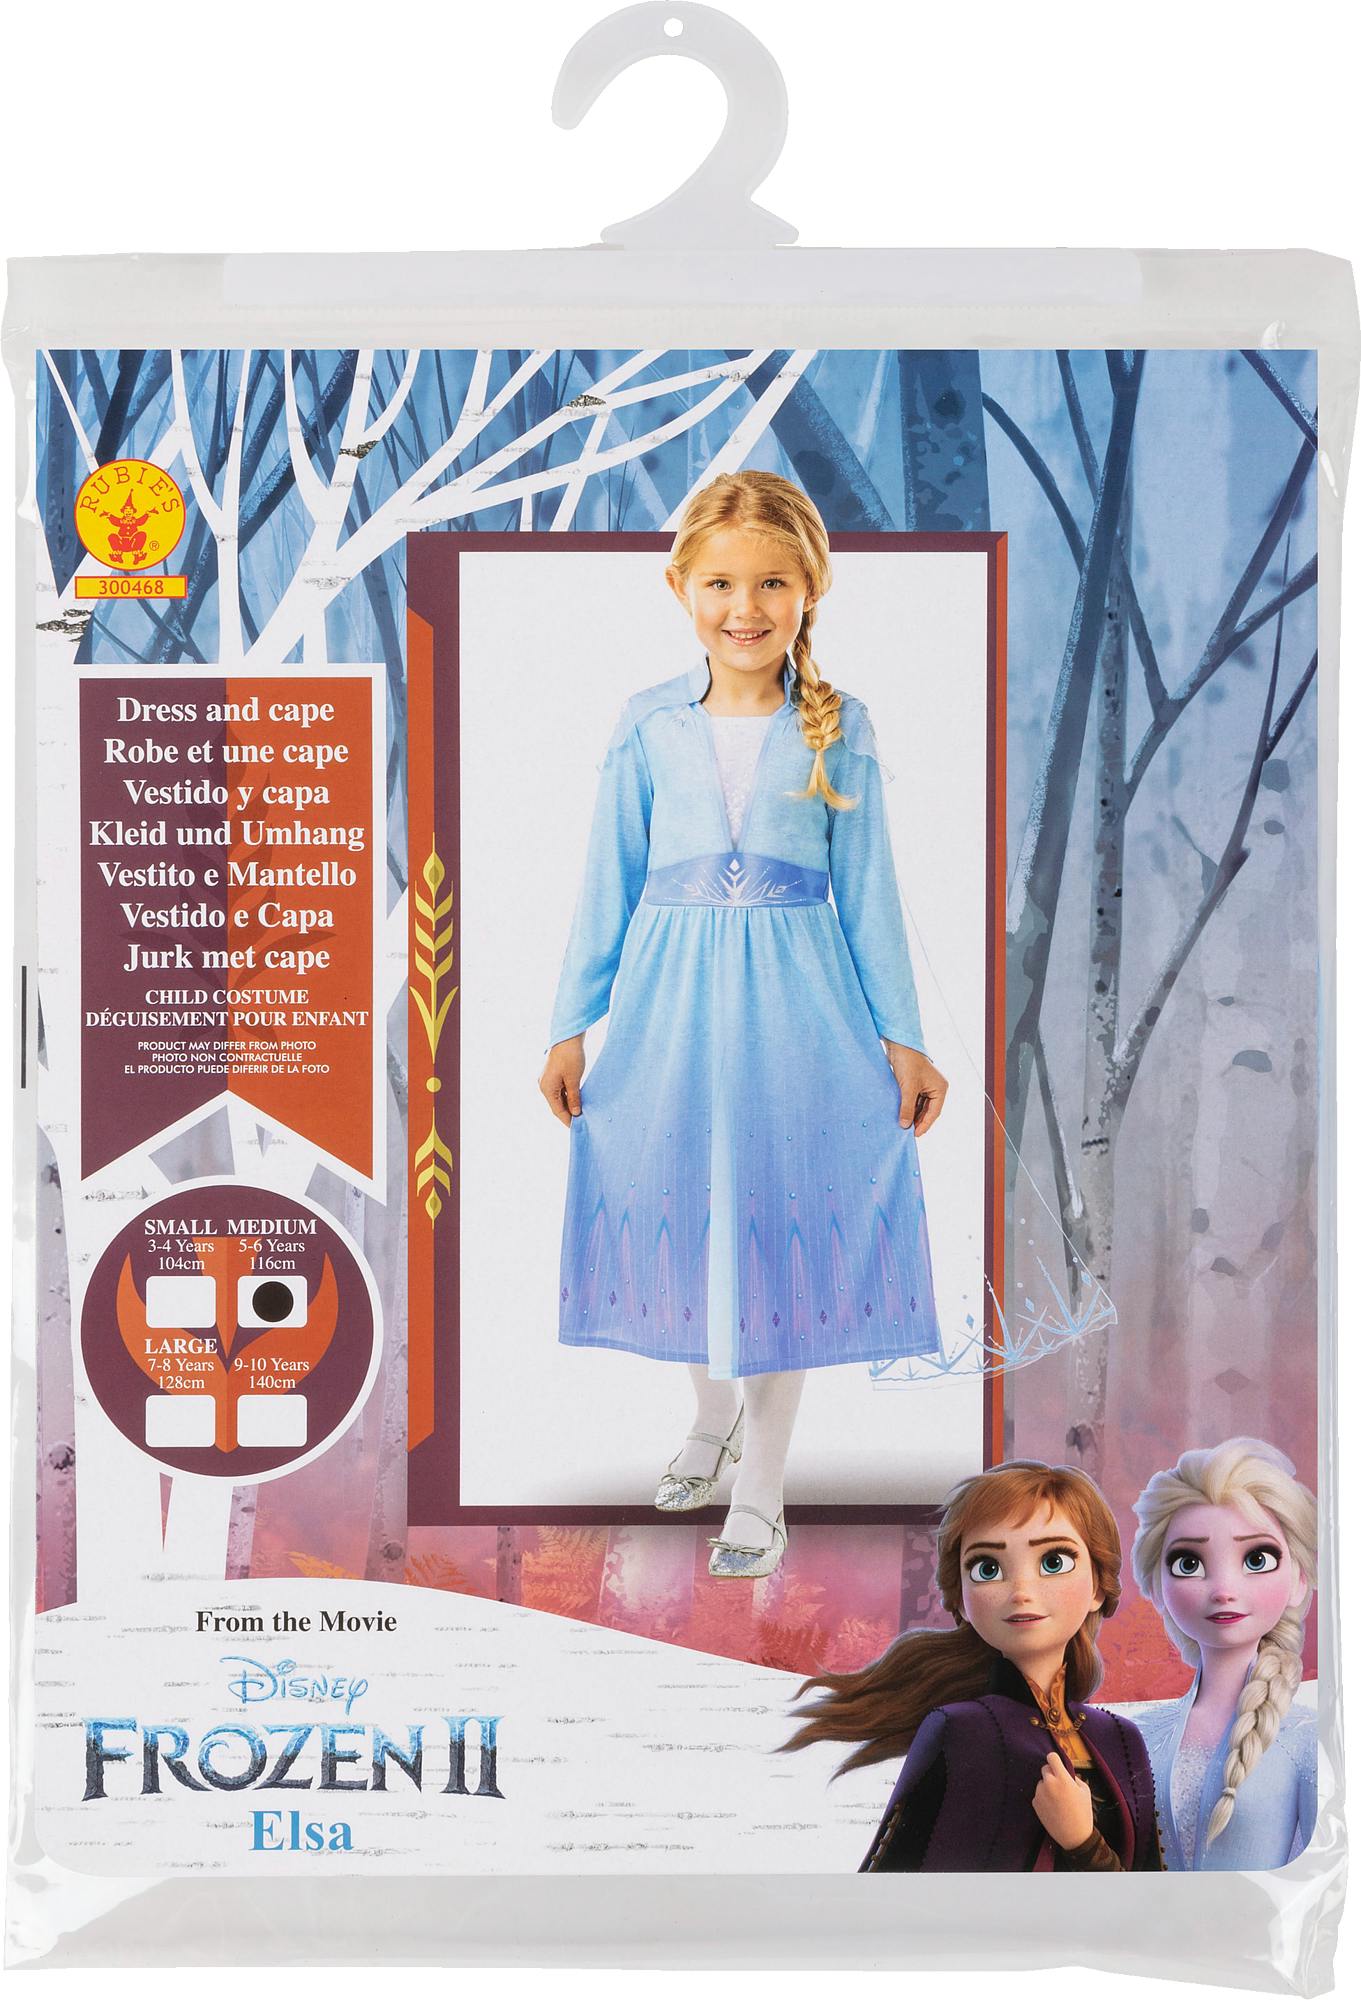 Déguisements/Frozen La Reine des Neiges Déguisement: Elsa